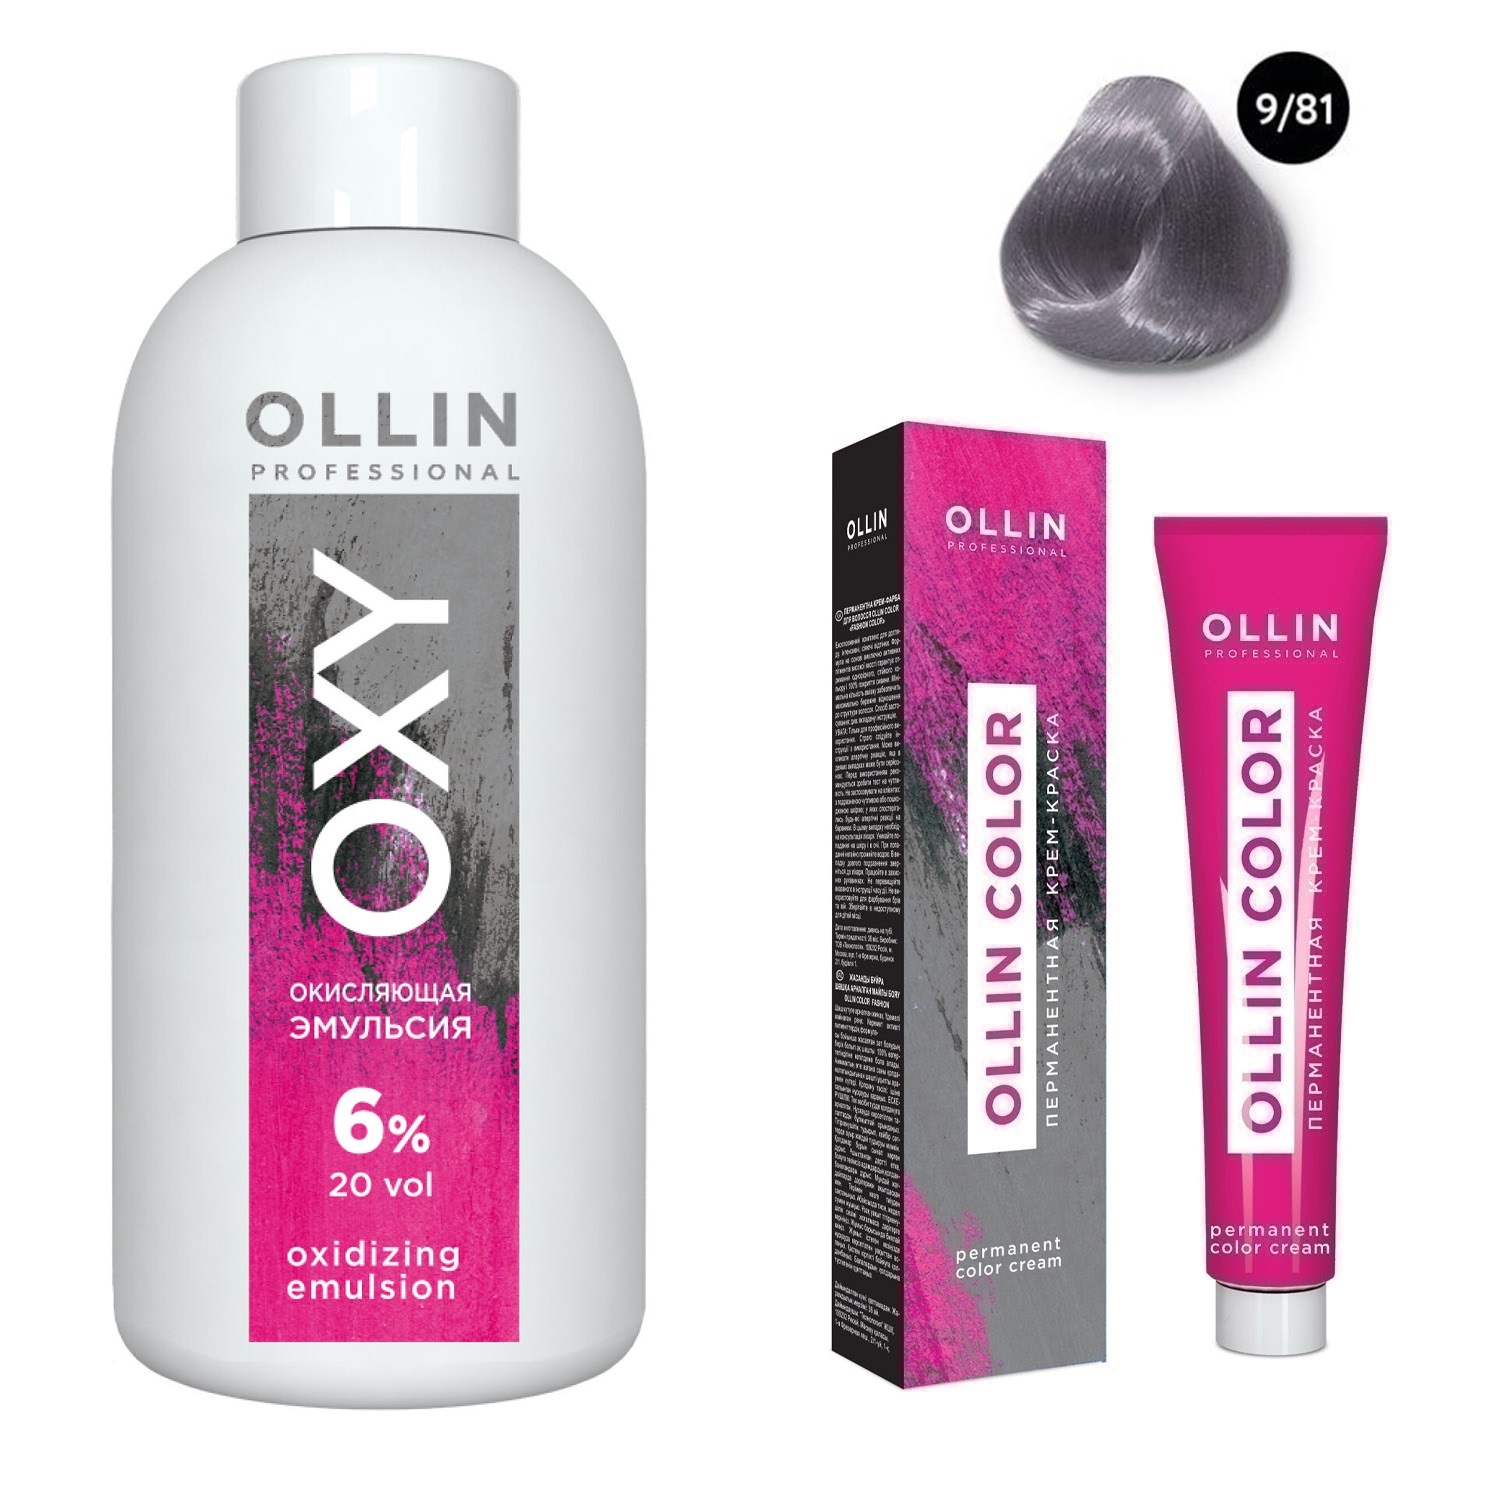 Ollin Professional Набор Перманентная крем-краска для волос Ollin Color оттенок 9/81 блондин жемчужно-пепельный 100 мл + Окисляющая эмульсия Oxy 6% 150 мл (Ollin Professional, Ollin Color) окисляющая эмульсия oxy 9% 1000 мл